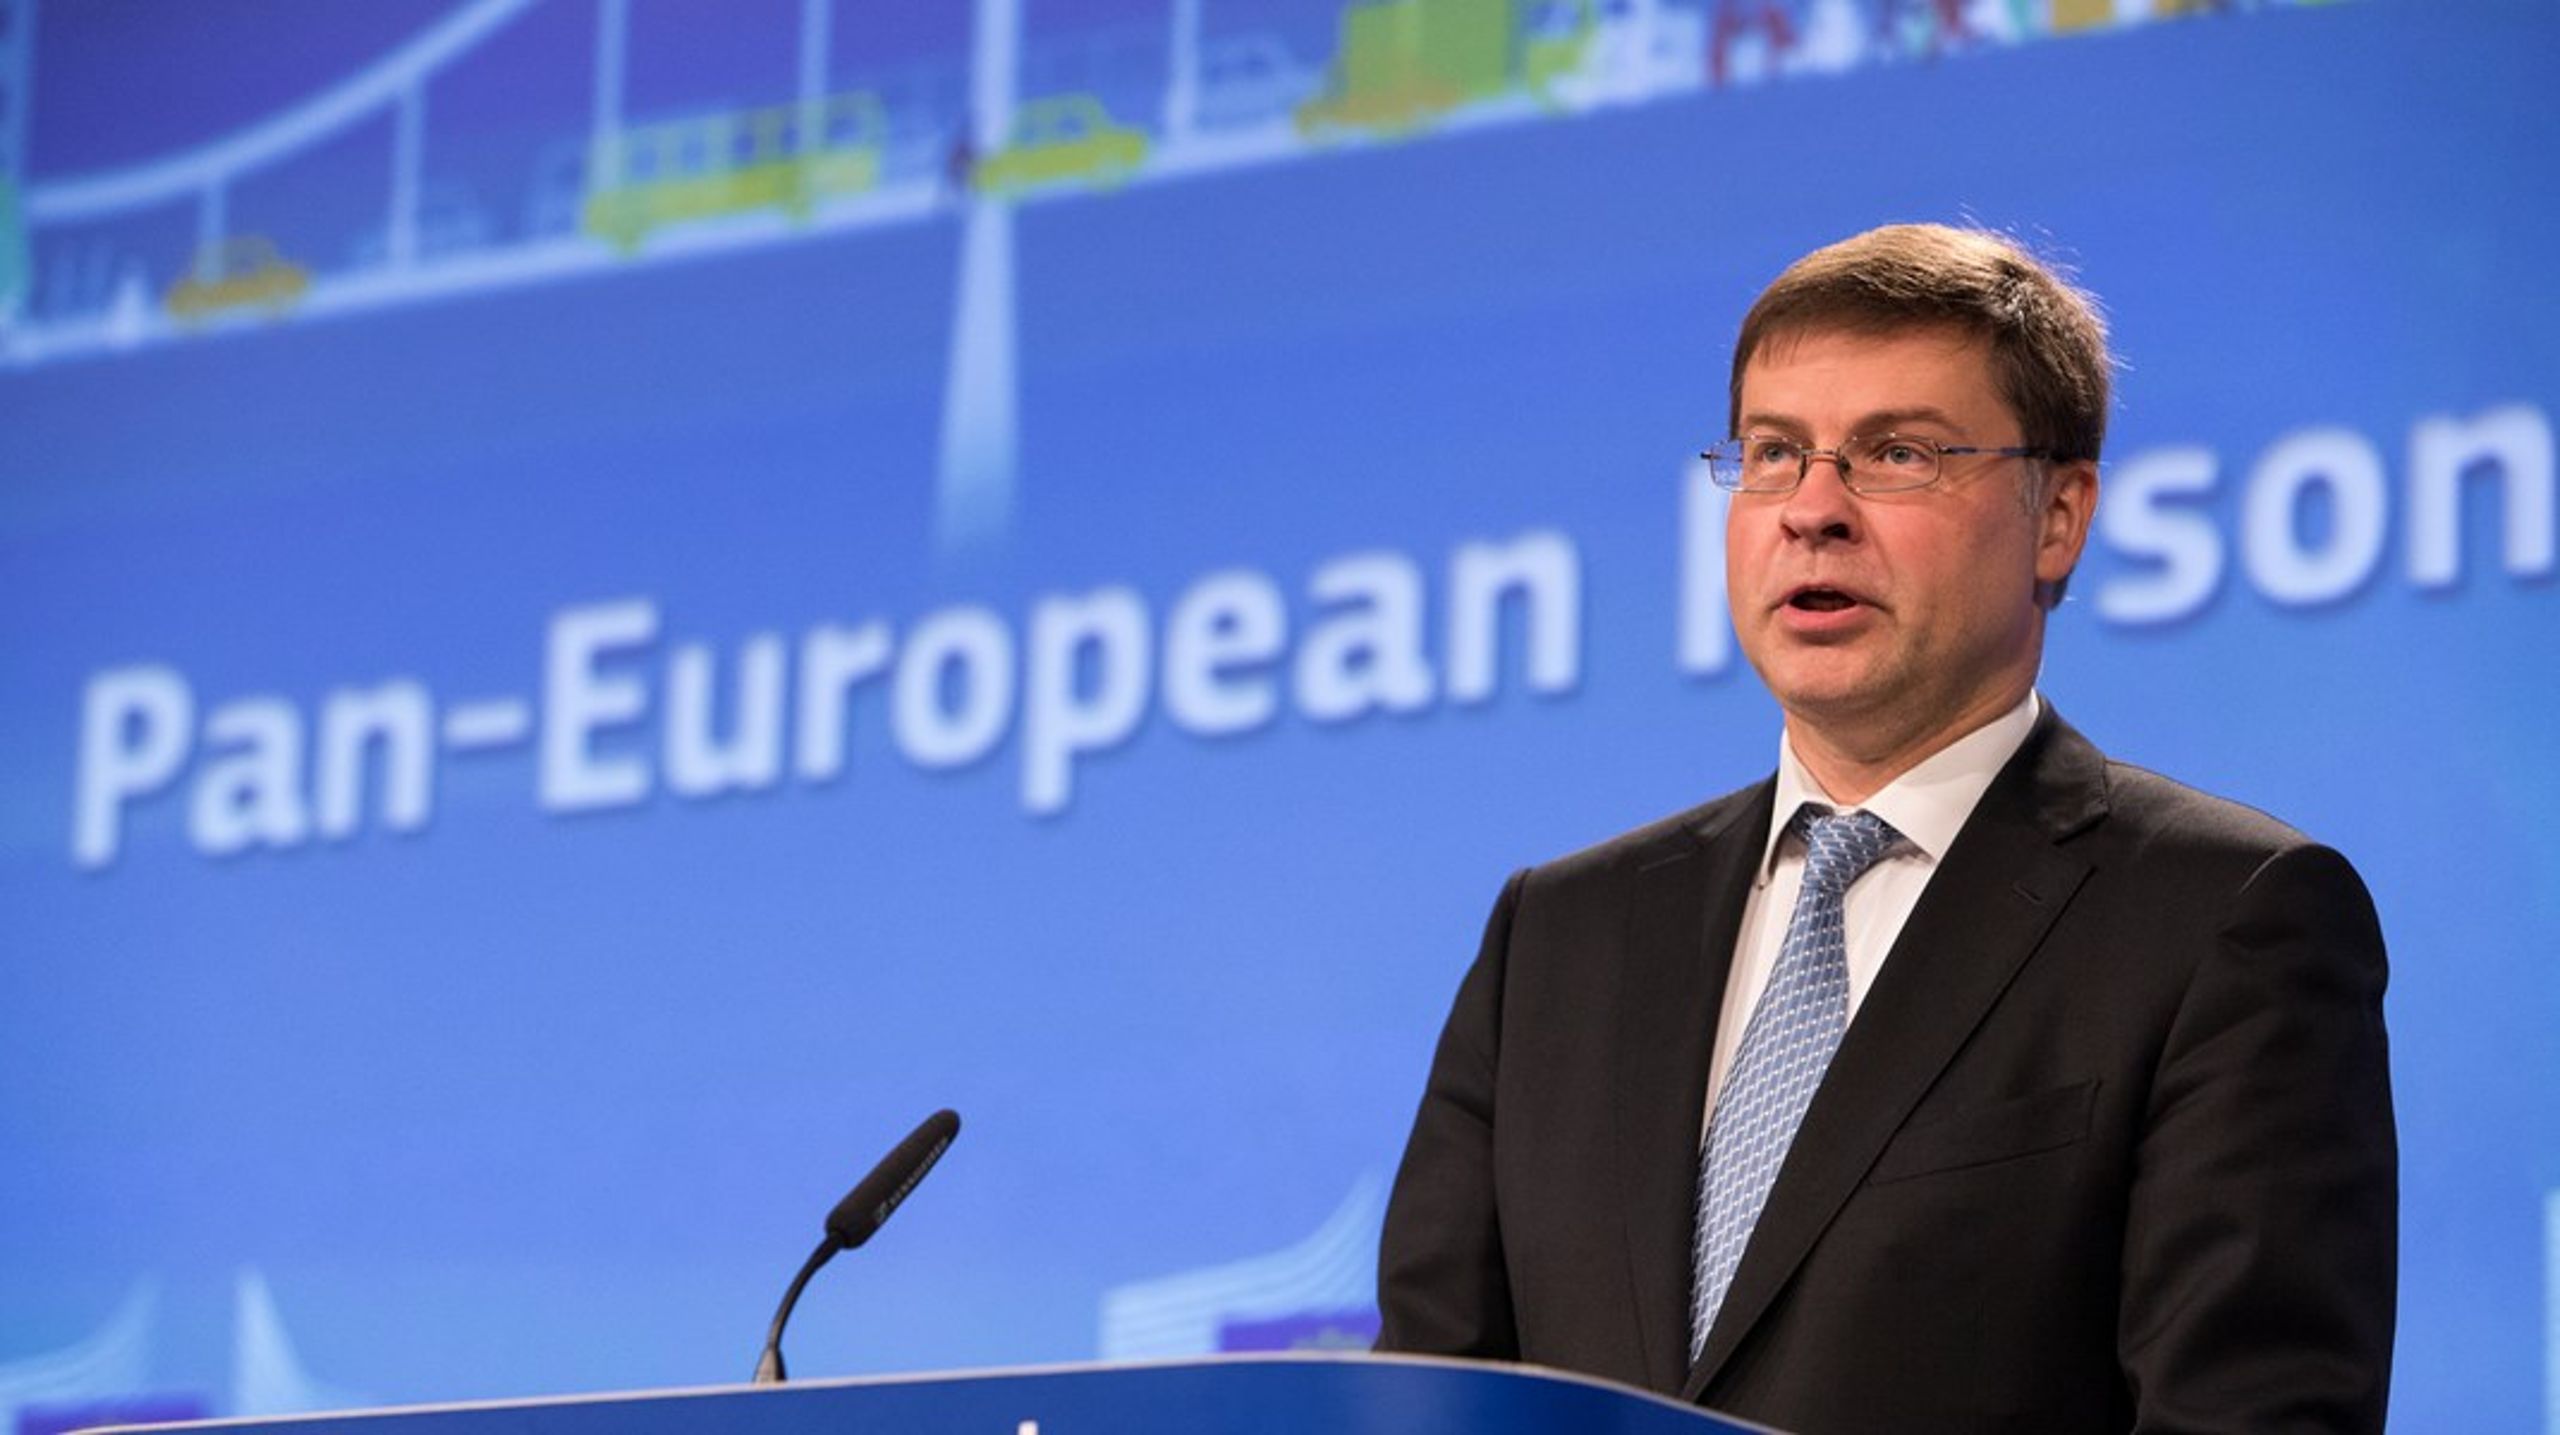 Valdis Dombrovskis handelsutspel behöver mer kött på benen, menar svenska parlamentariker<br>